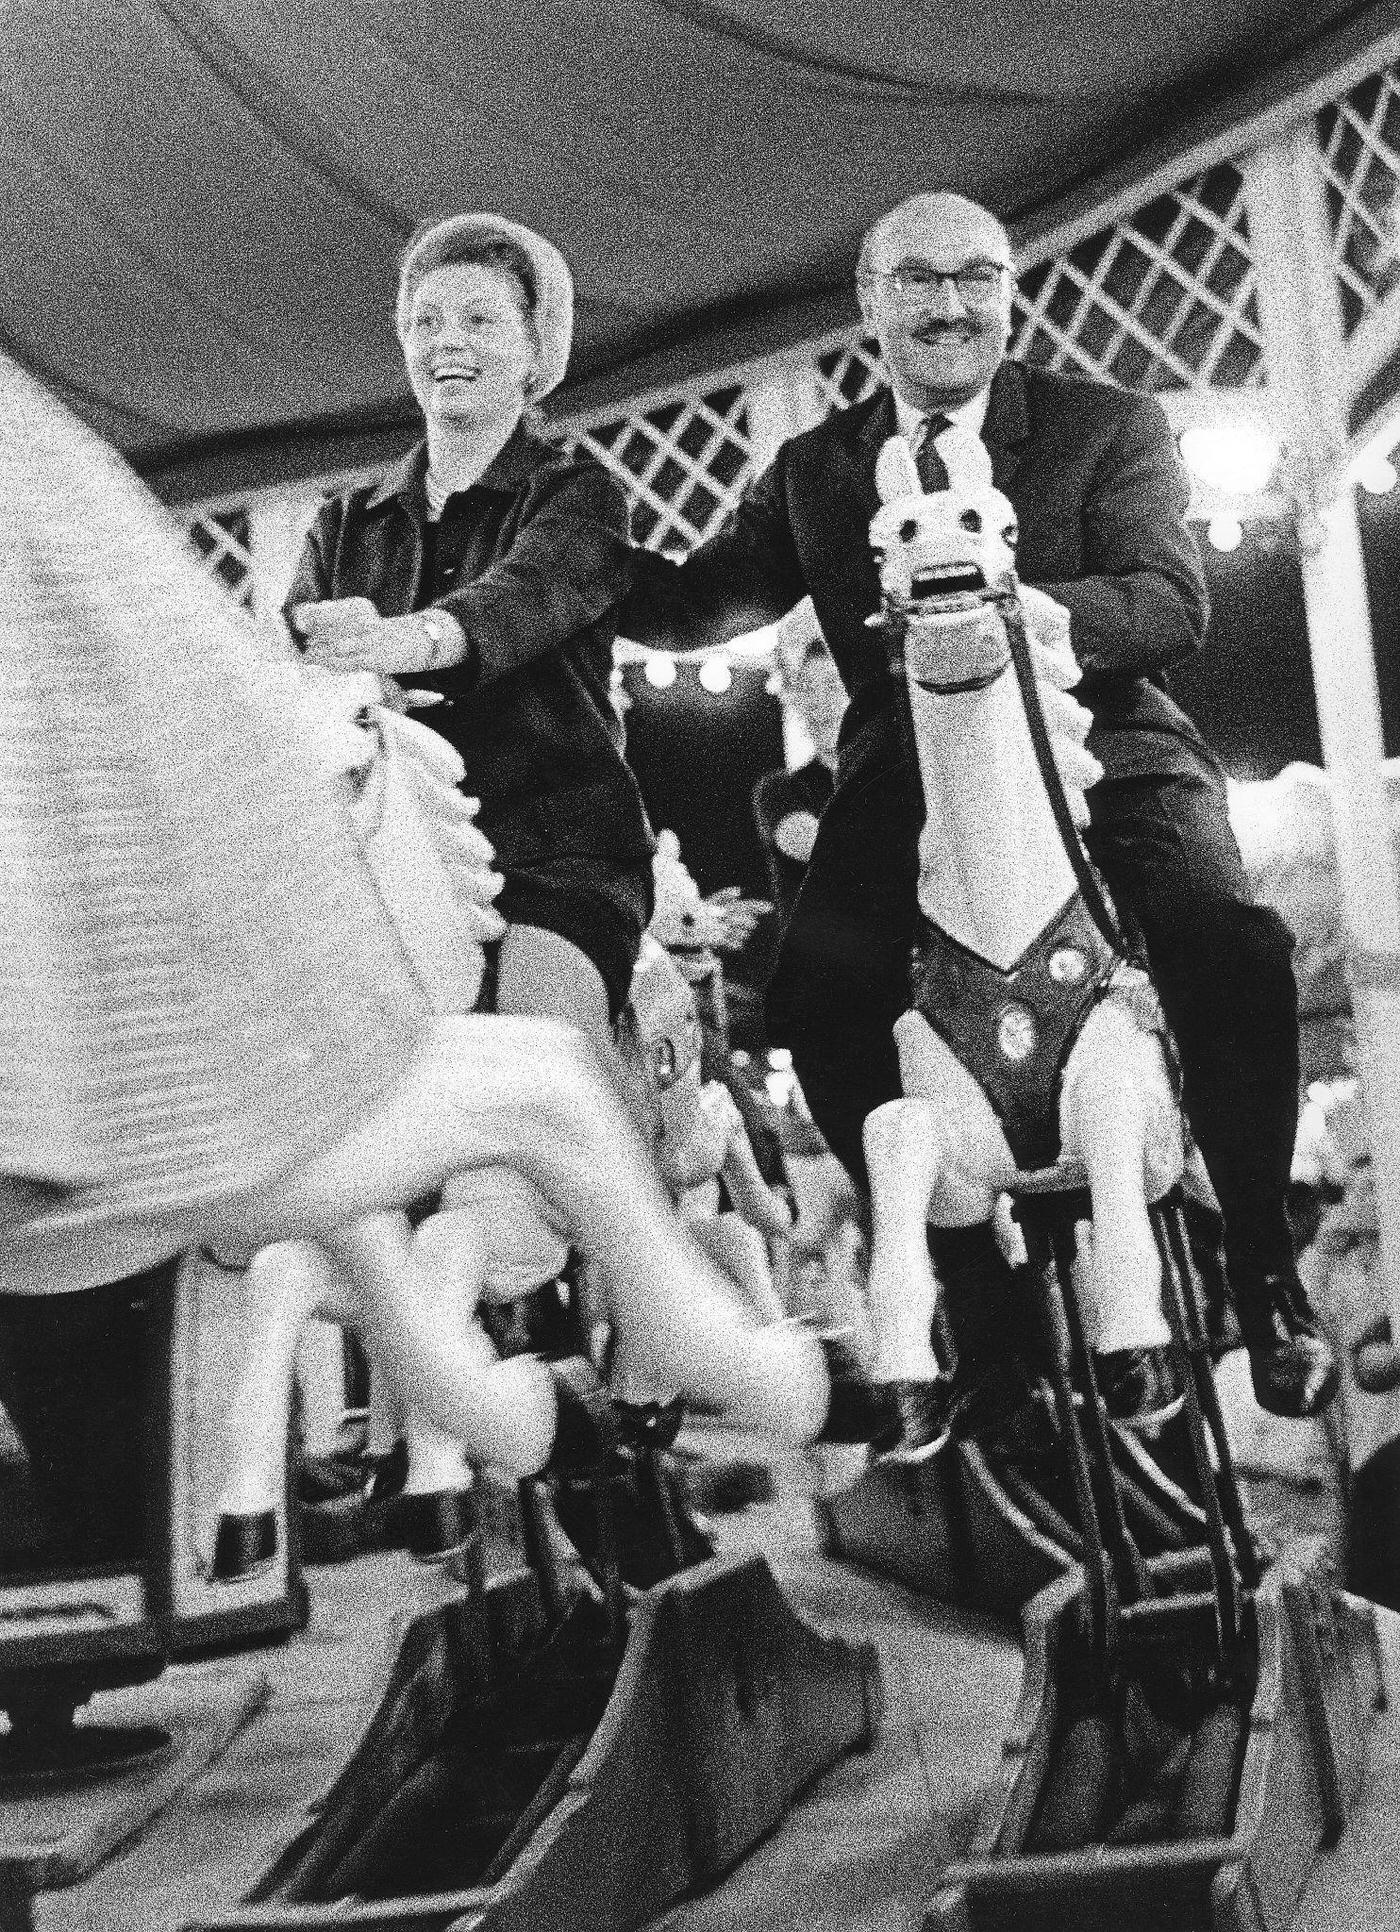 Oktoberfest roundabout ride, 1968.